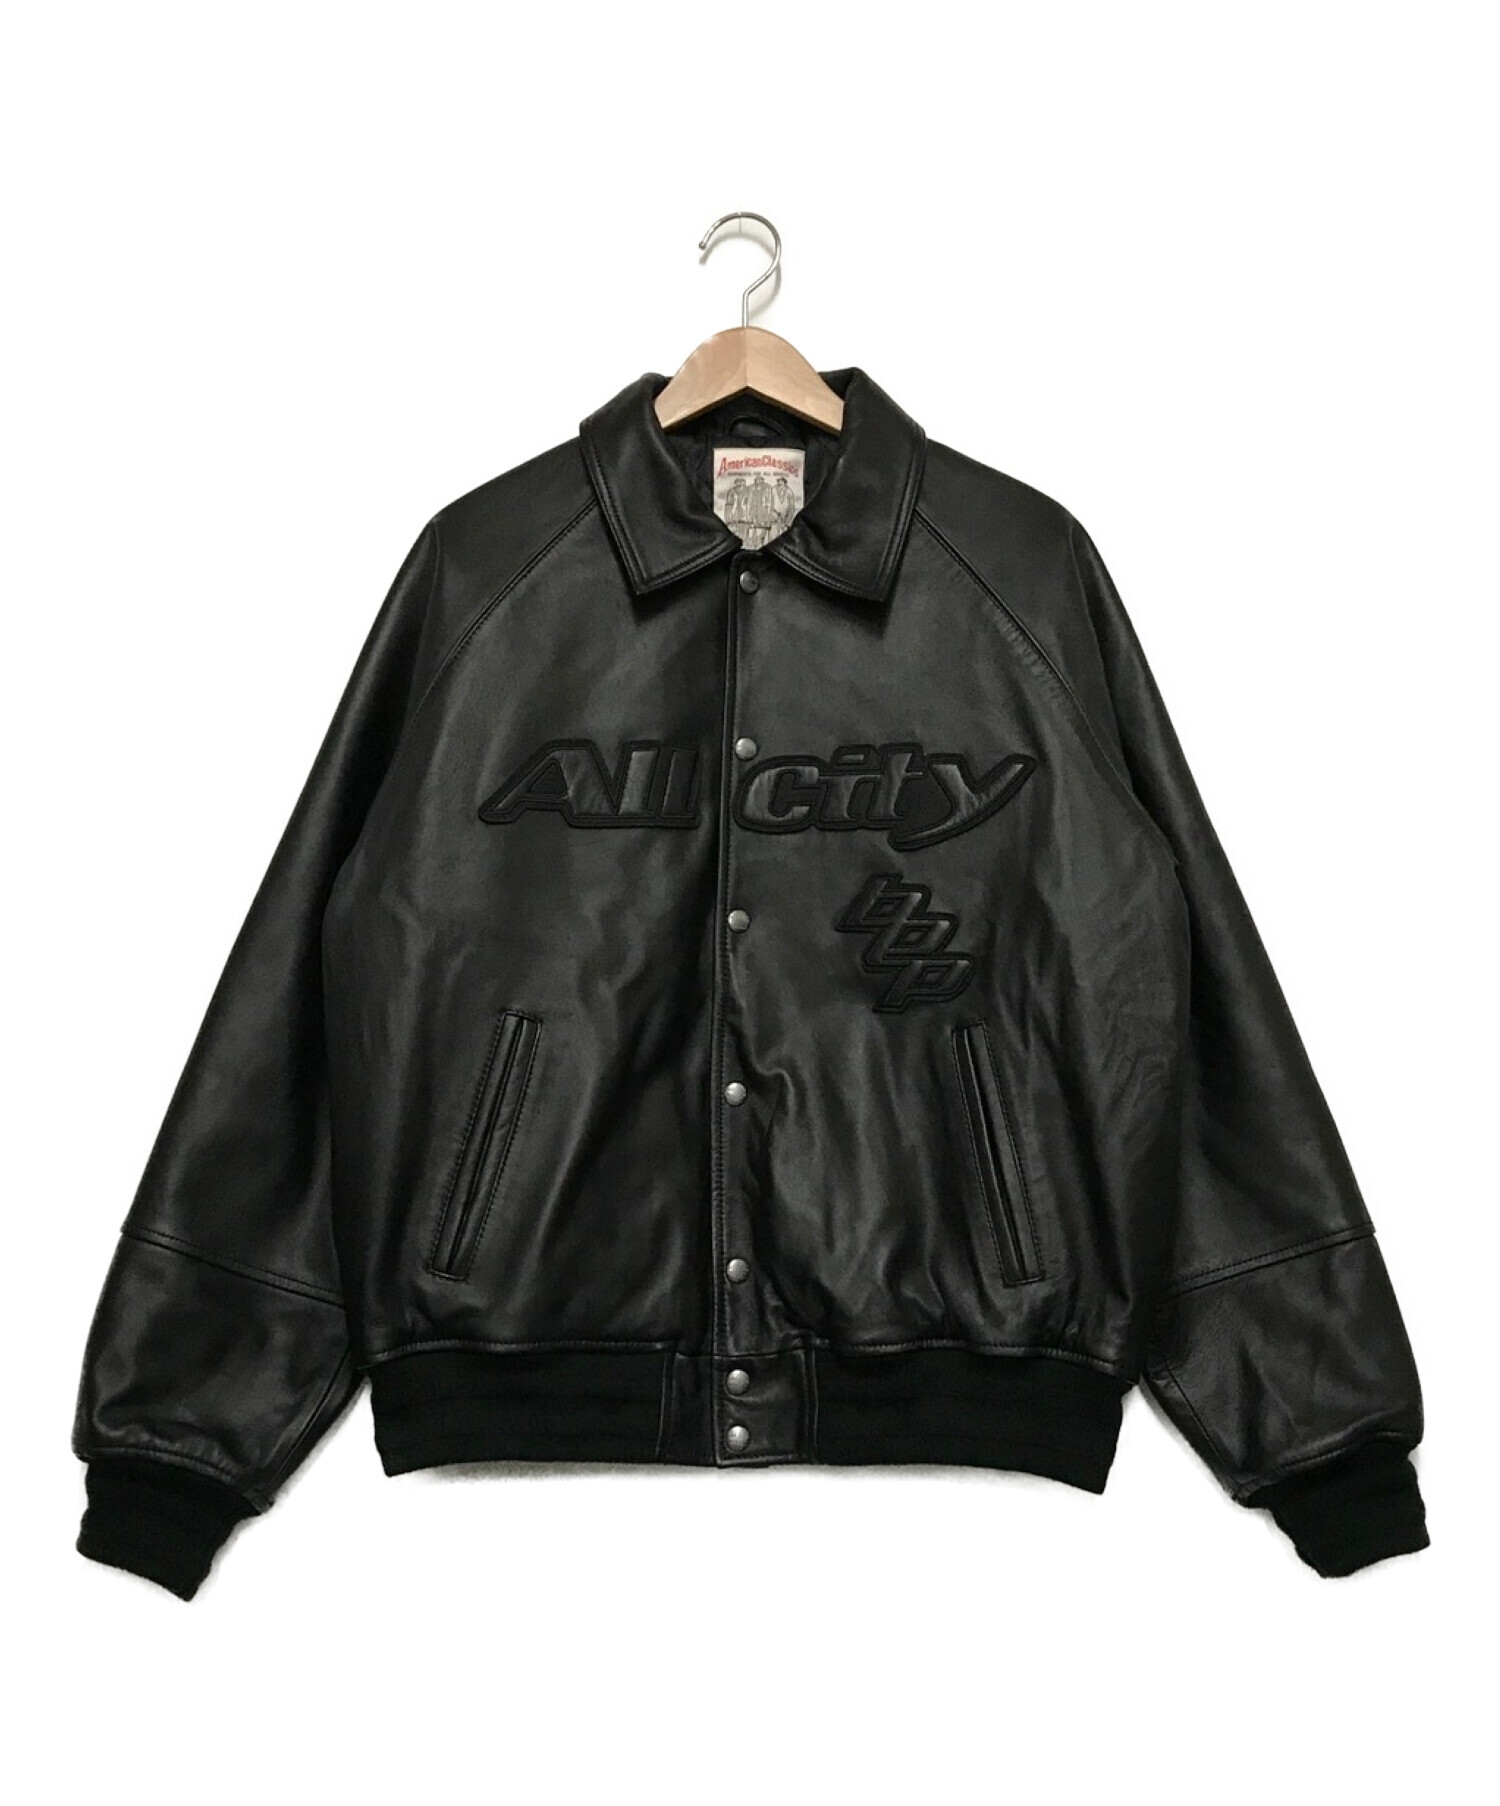 再販なしブラックアイパッチblackeyepatch leatherjacket smcint.com